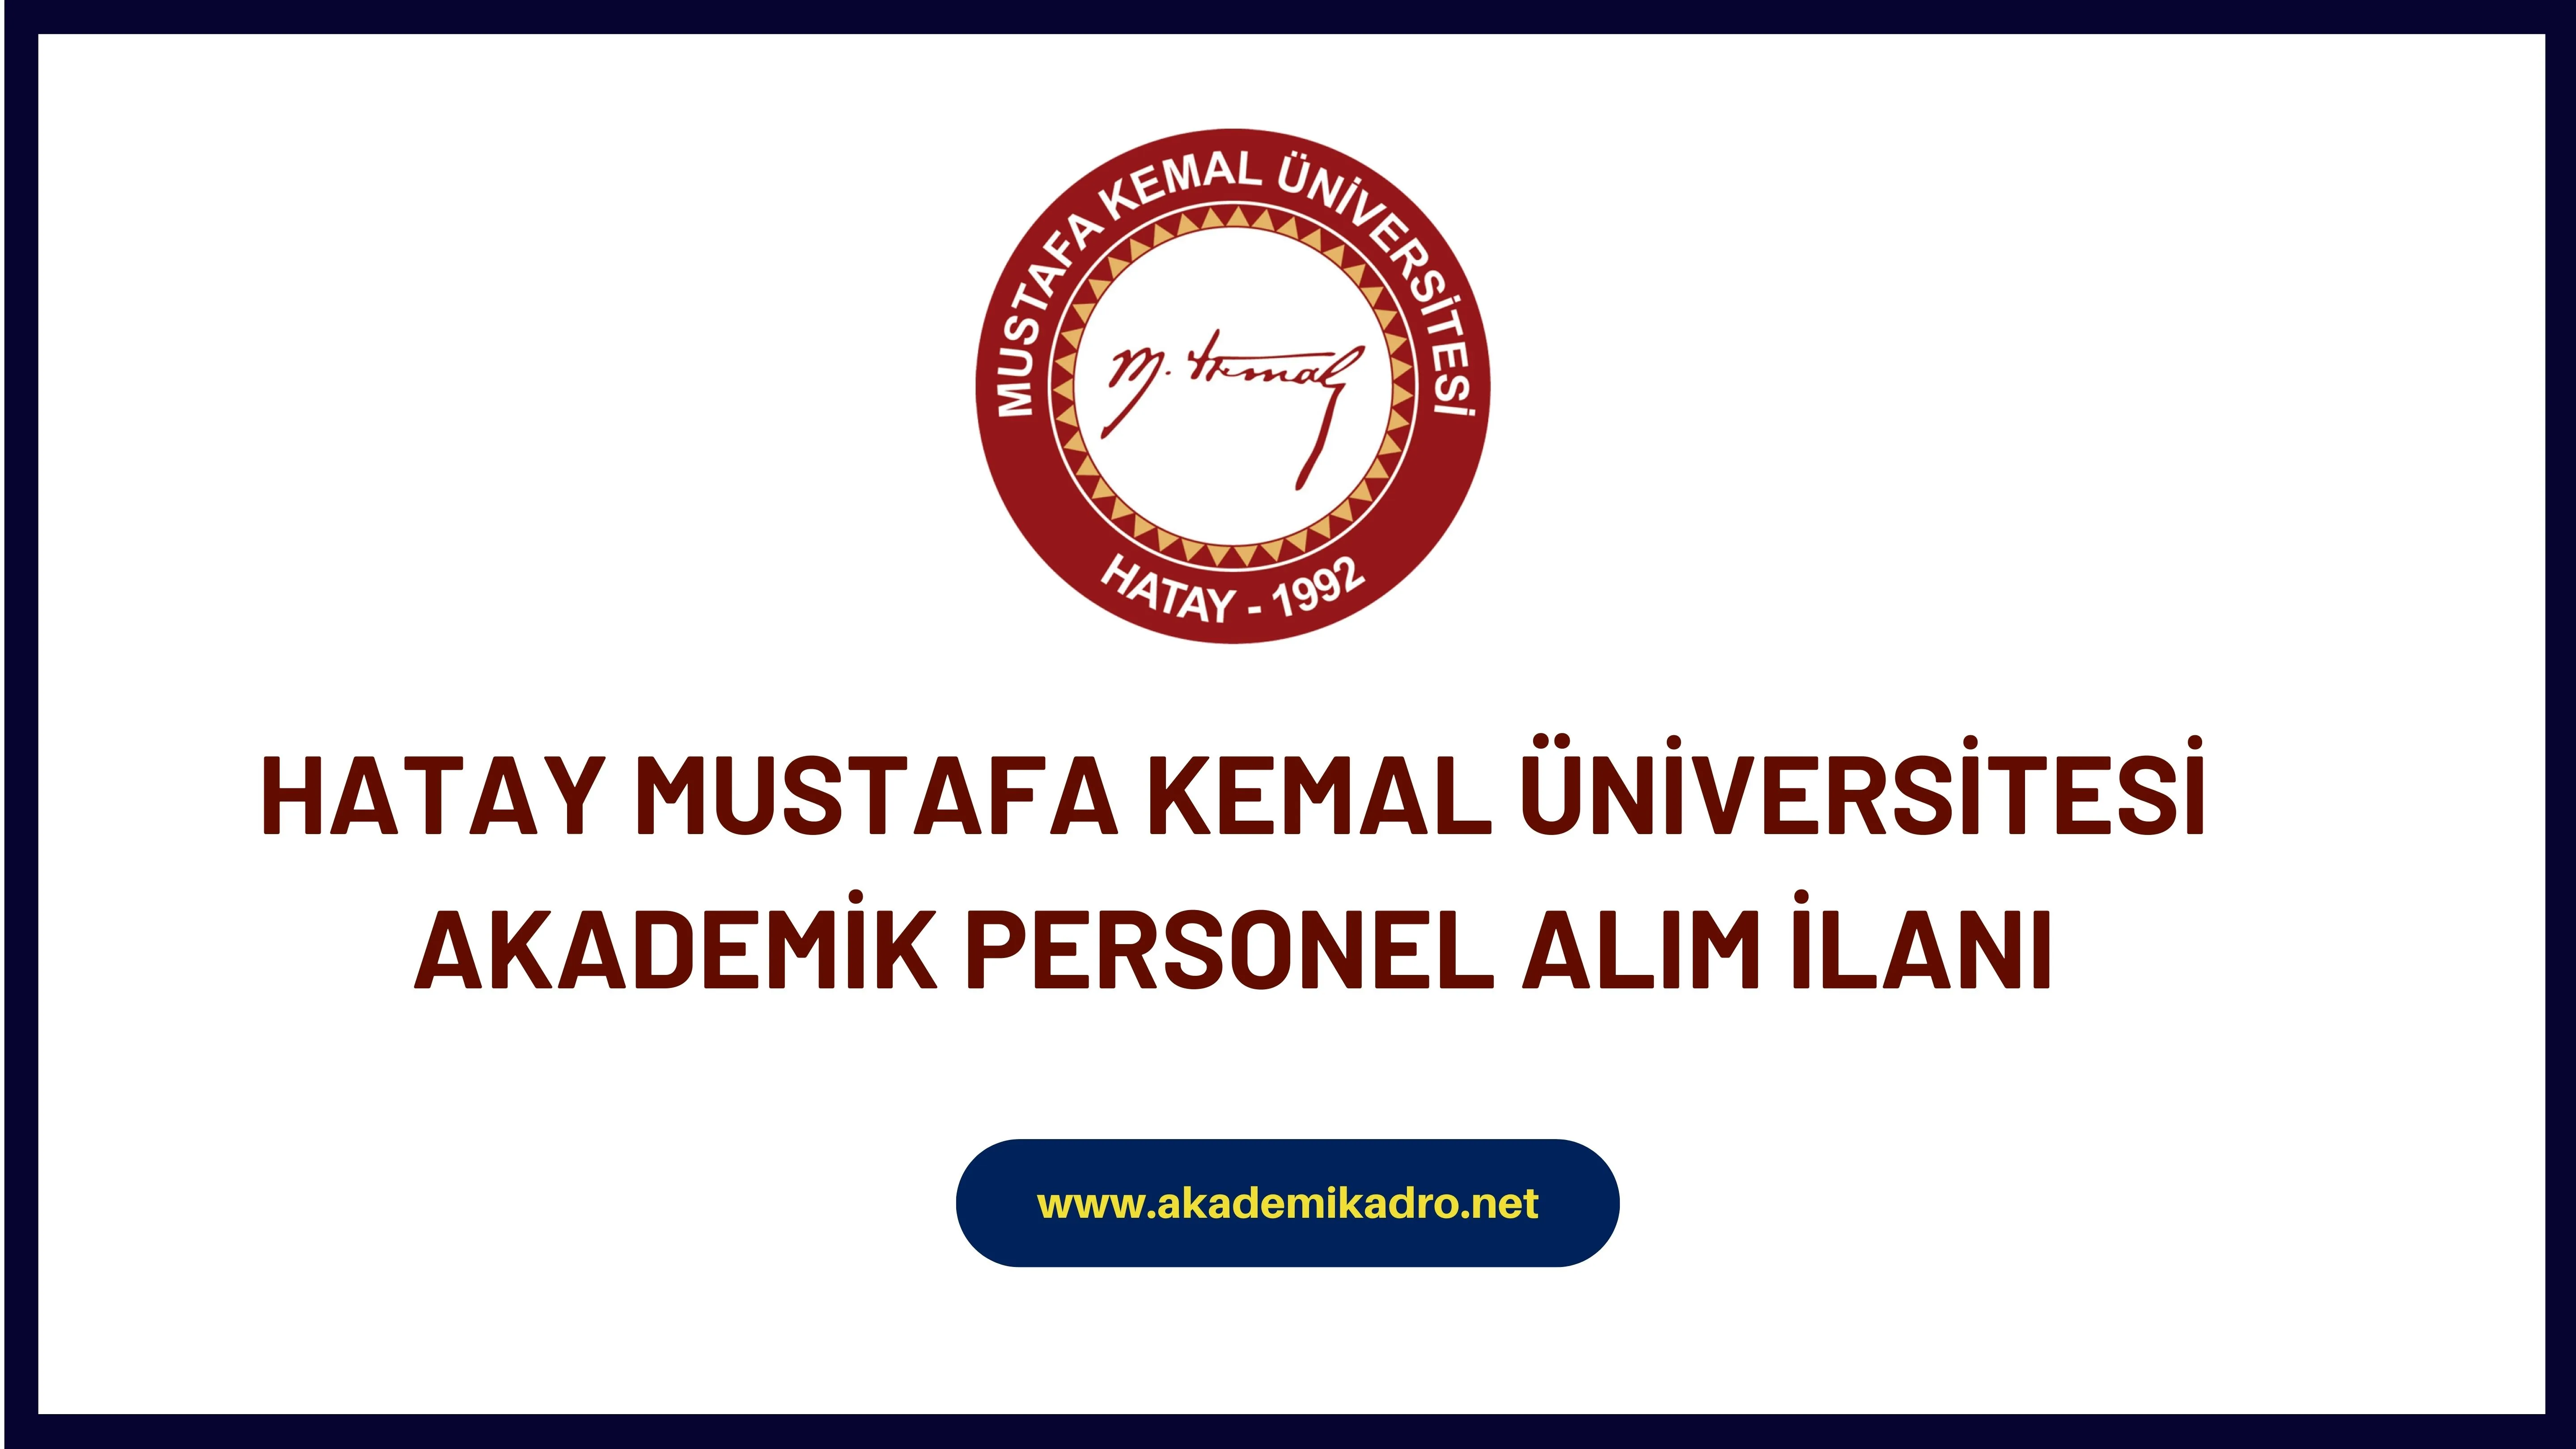 Hatay Mustafa Kemal Üniversitesi birçok alandan 48 akademik personel alacak